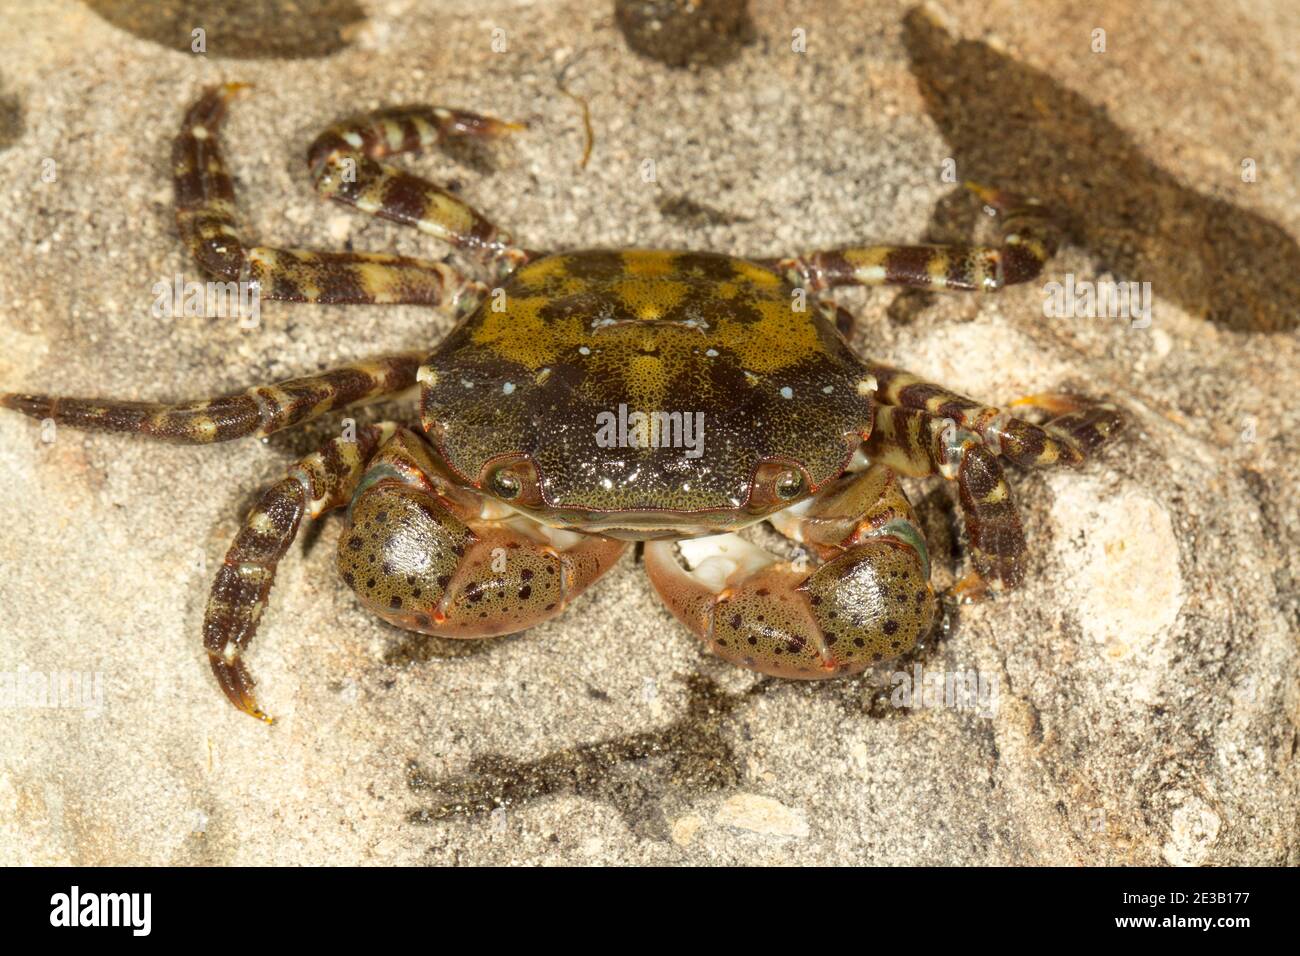 Asian shore crab Hemigrapsus sanguineus Stock Photo